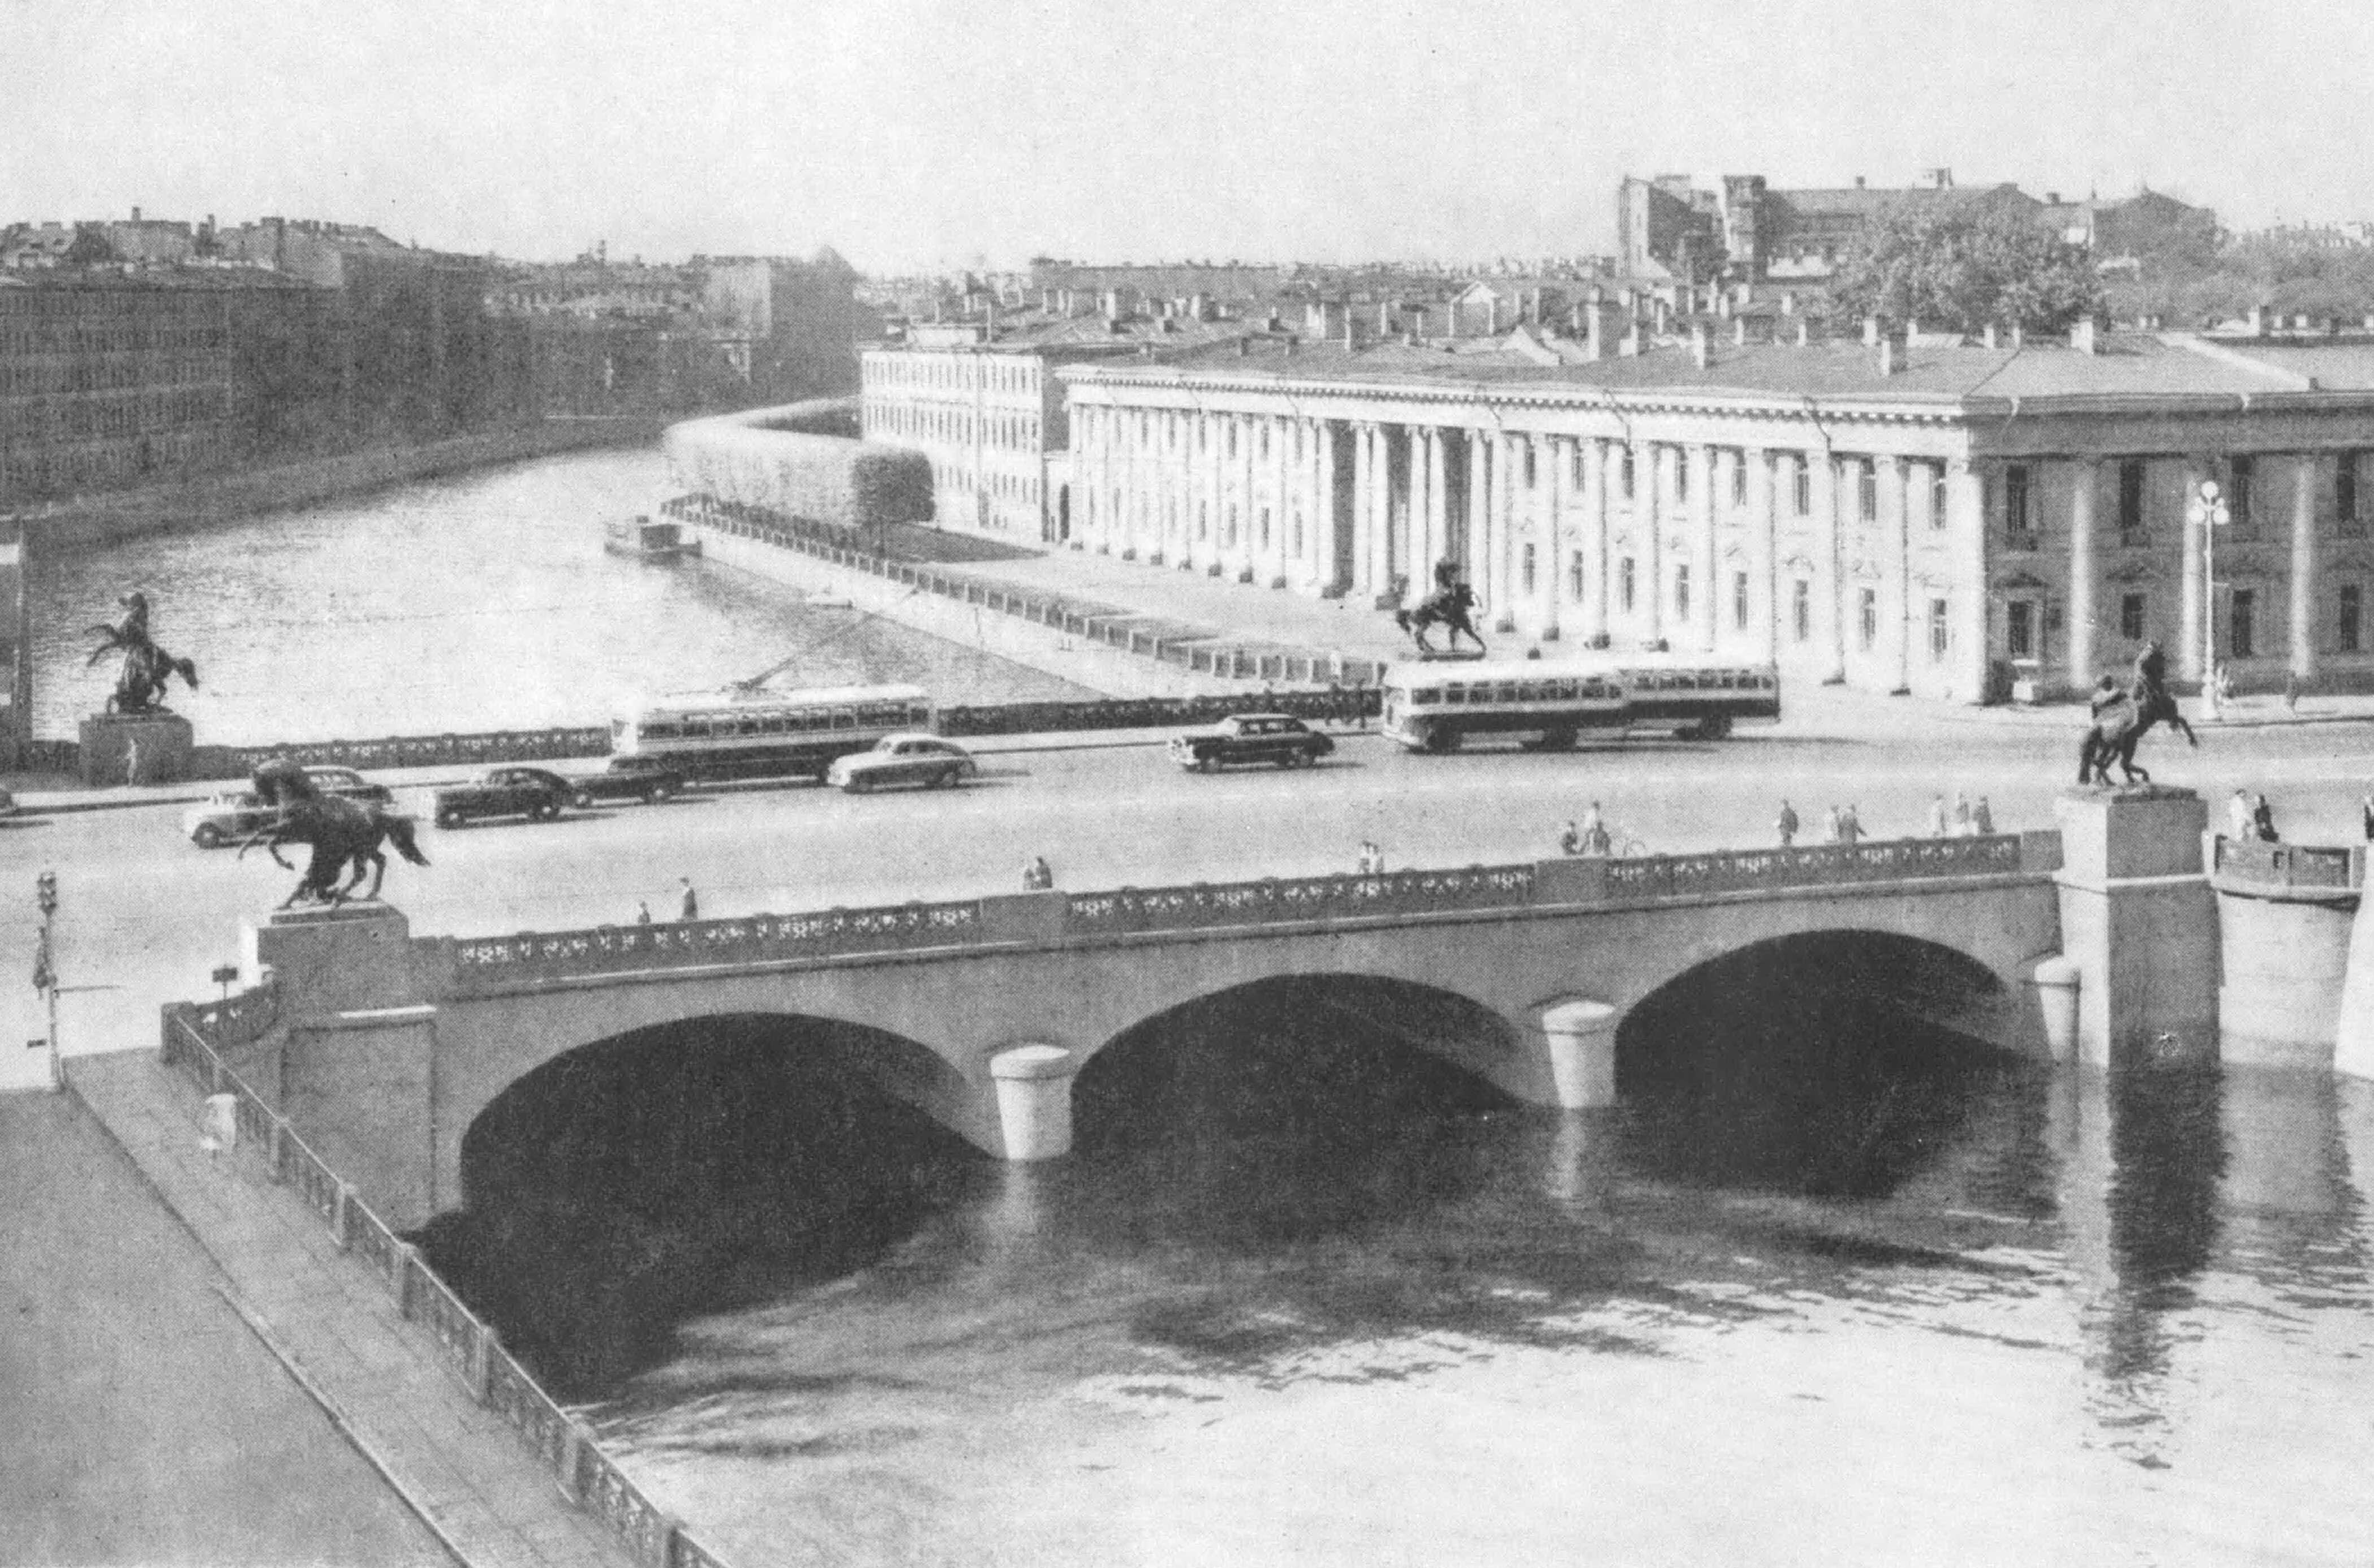 аничков мост в санкт петербурге фото